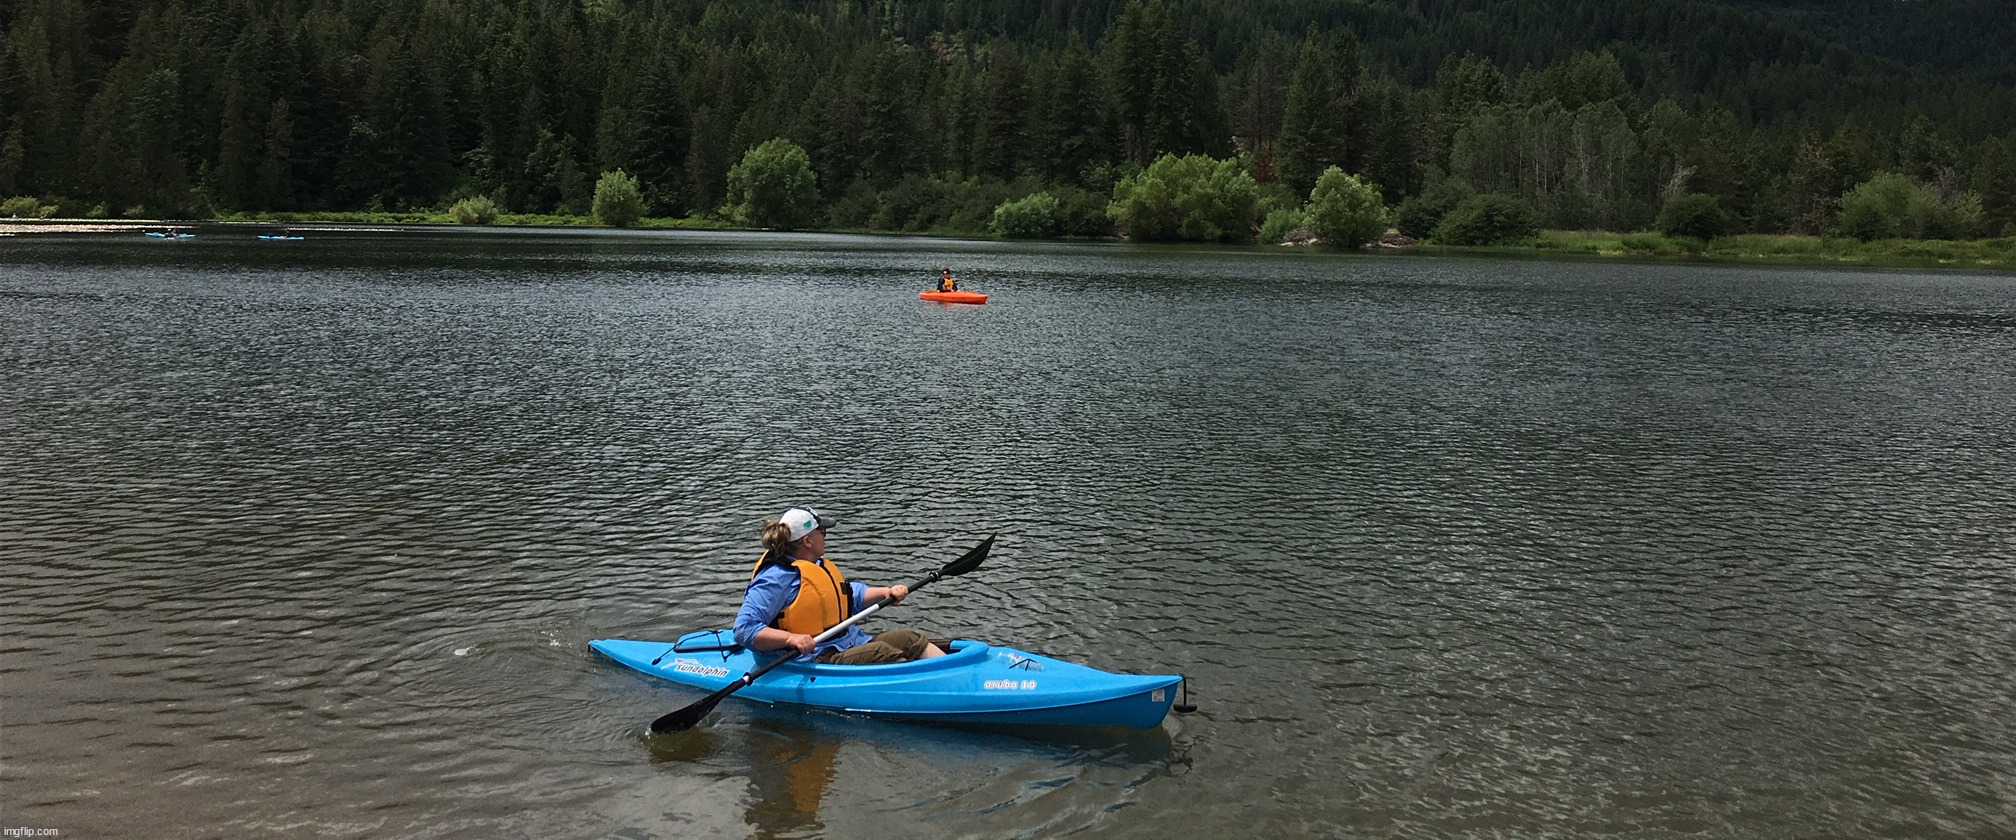 Kayaking on Spirit Lake | image tagged in photography | made w/ Imgflip meme maker